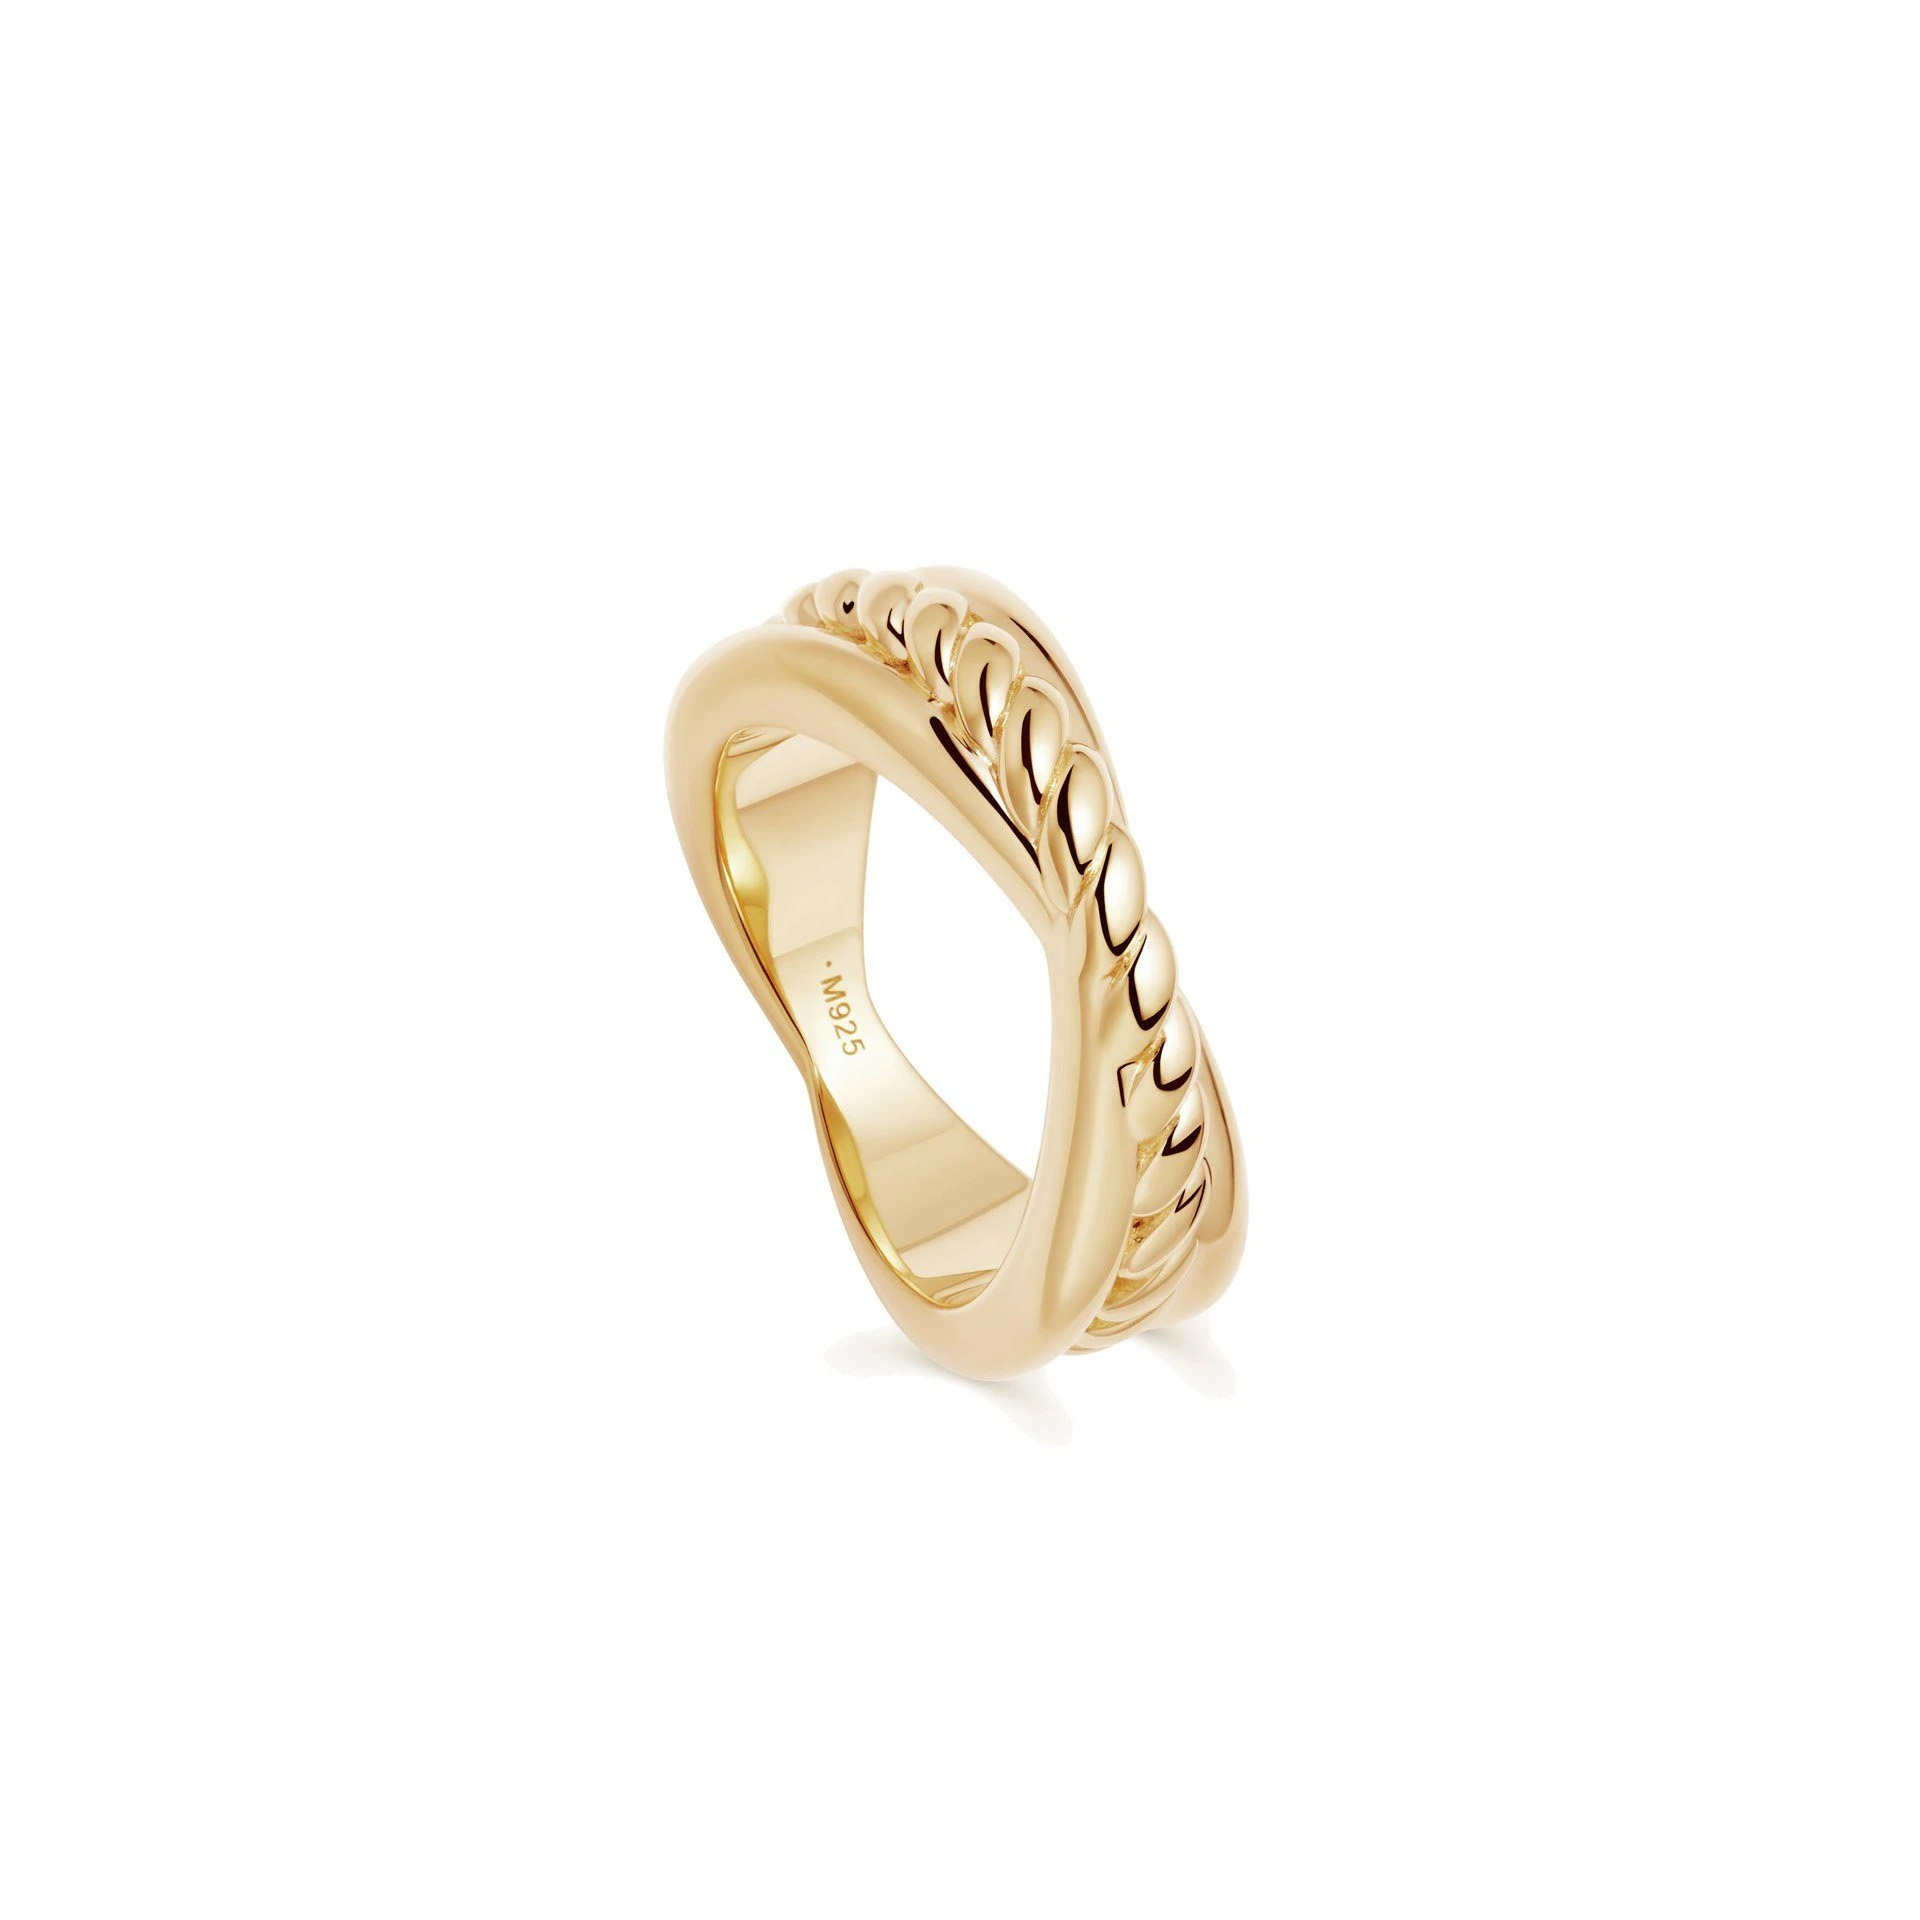 El anillo OEM al por mayor presenta un diseño de cuerda de joyería OEM/ODM y está elaborado en oro vermeil de 18 quilates.